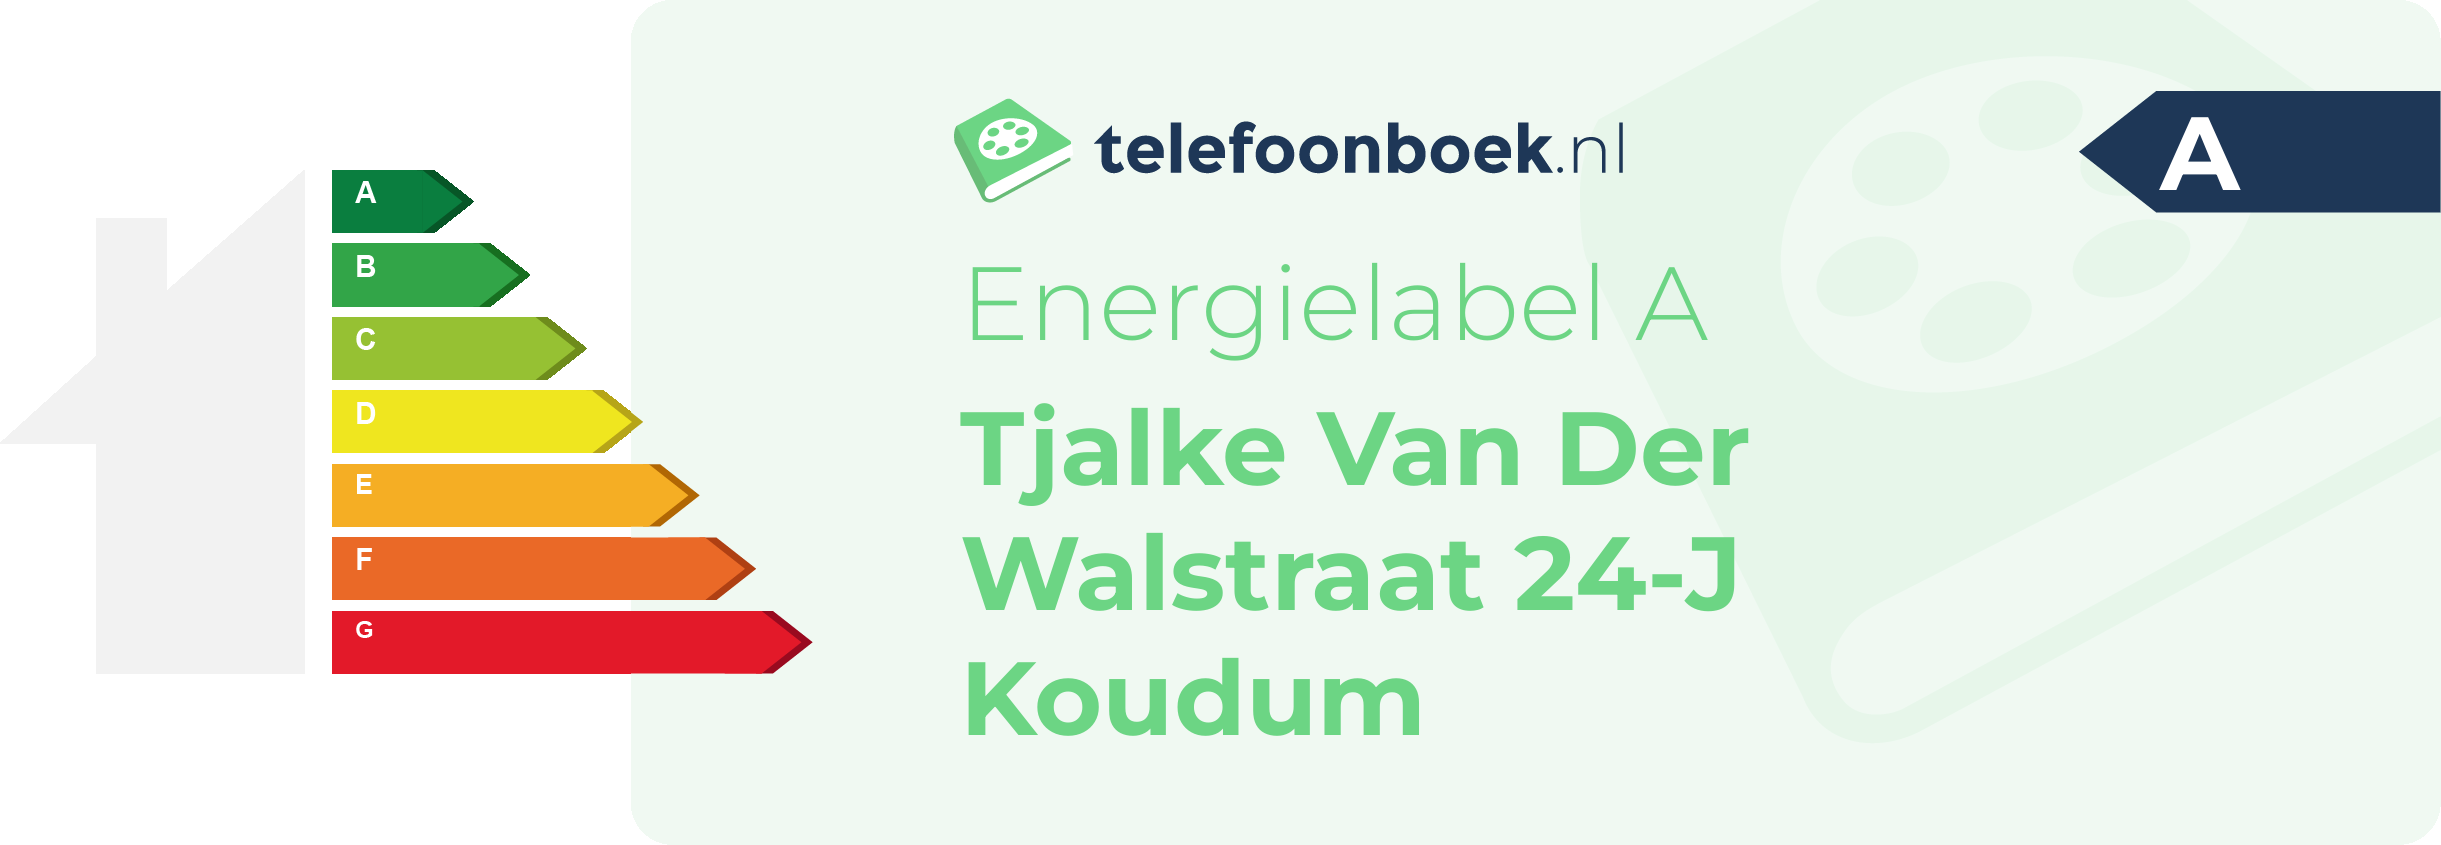 Energielabel Tjalke Van Der Walstraat 24-J Koudum